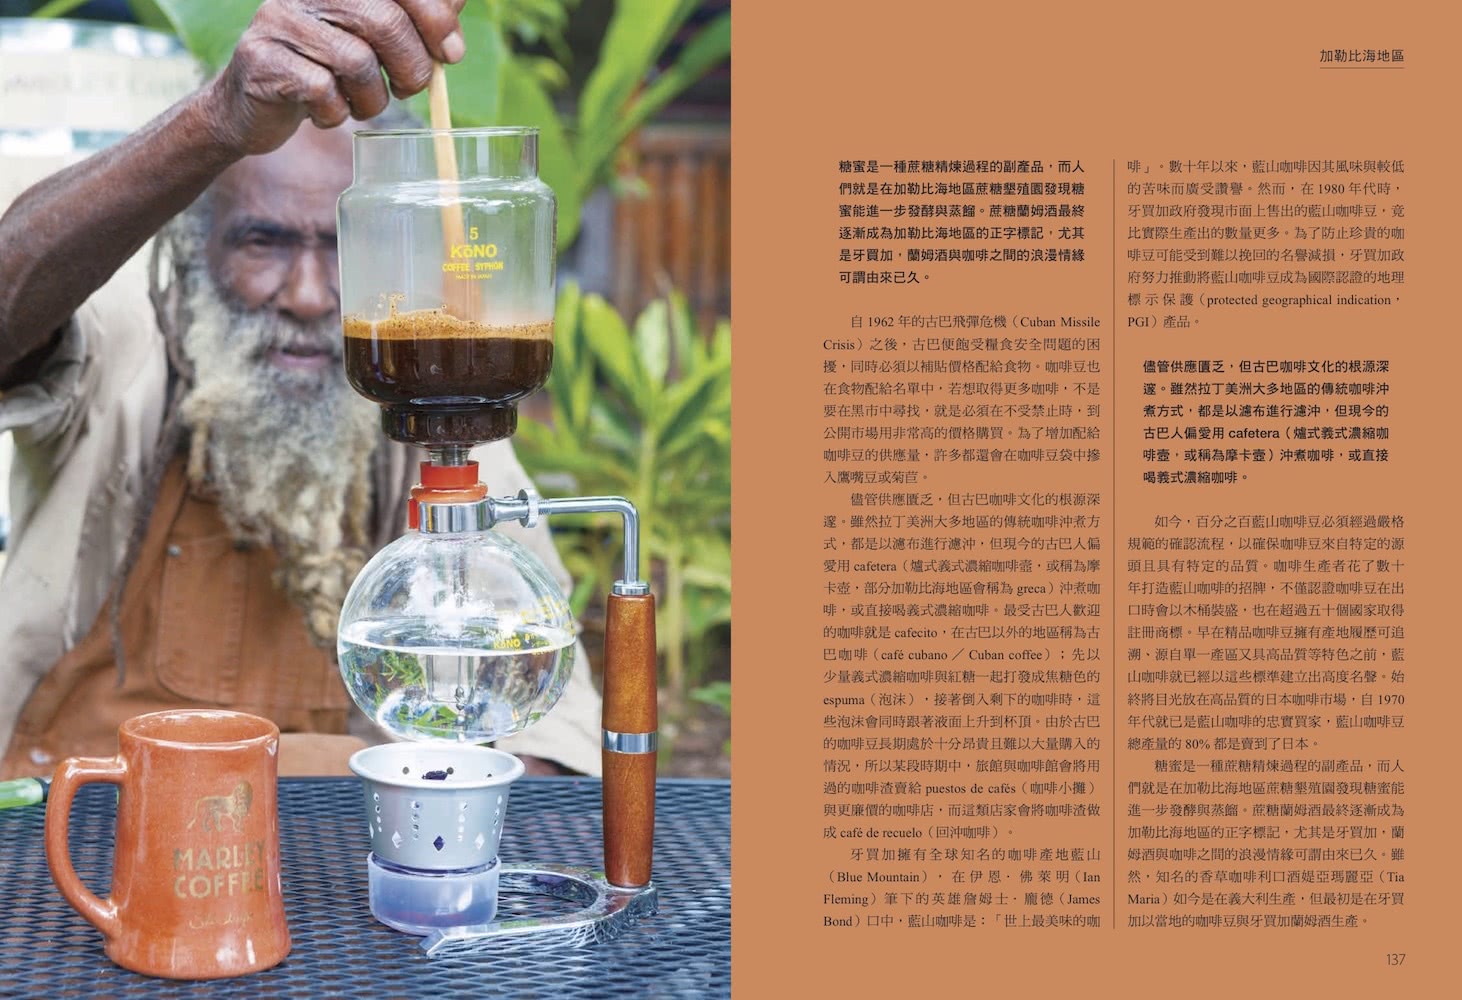 尋味．世界咖啡――跟著咖啡豆的流轉傳播，認識在地沖煮配方與品飲日常，探索全球咖啡文化風景